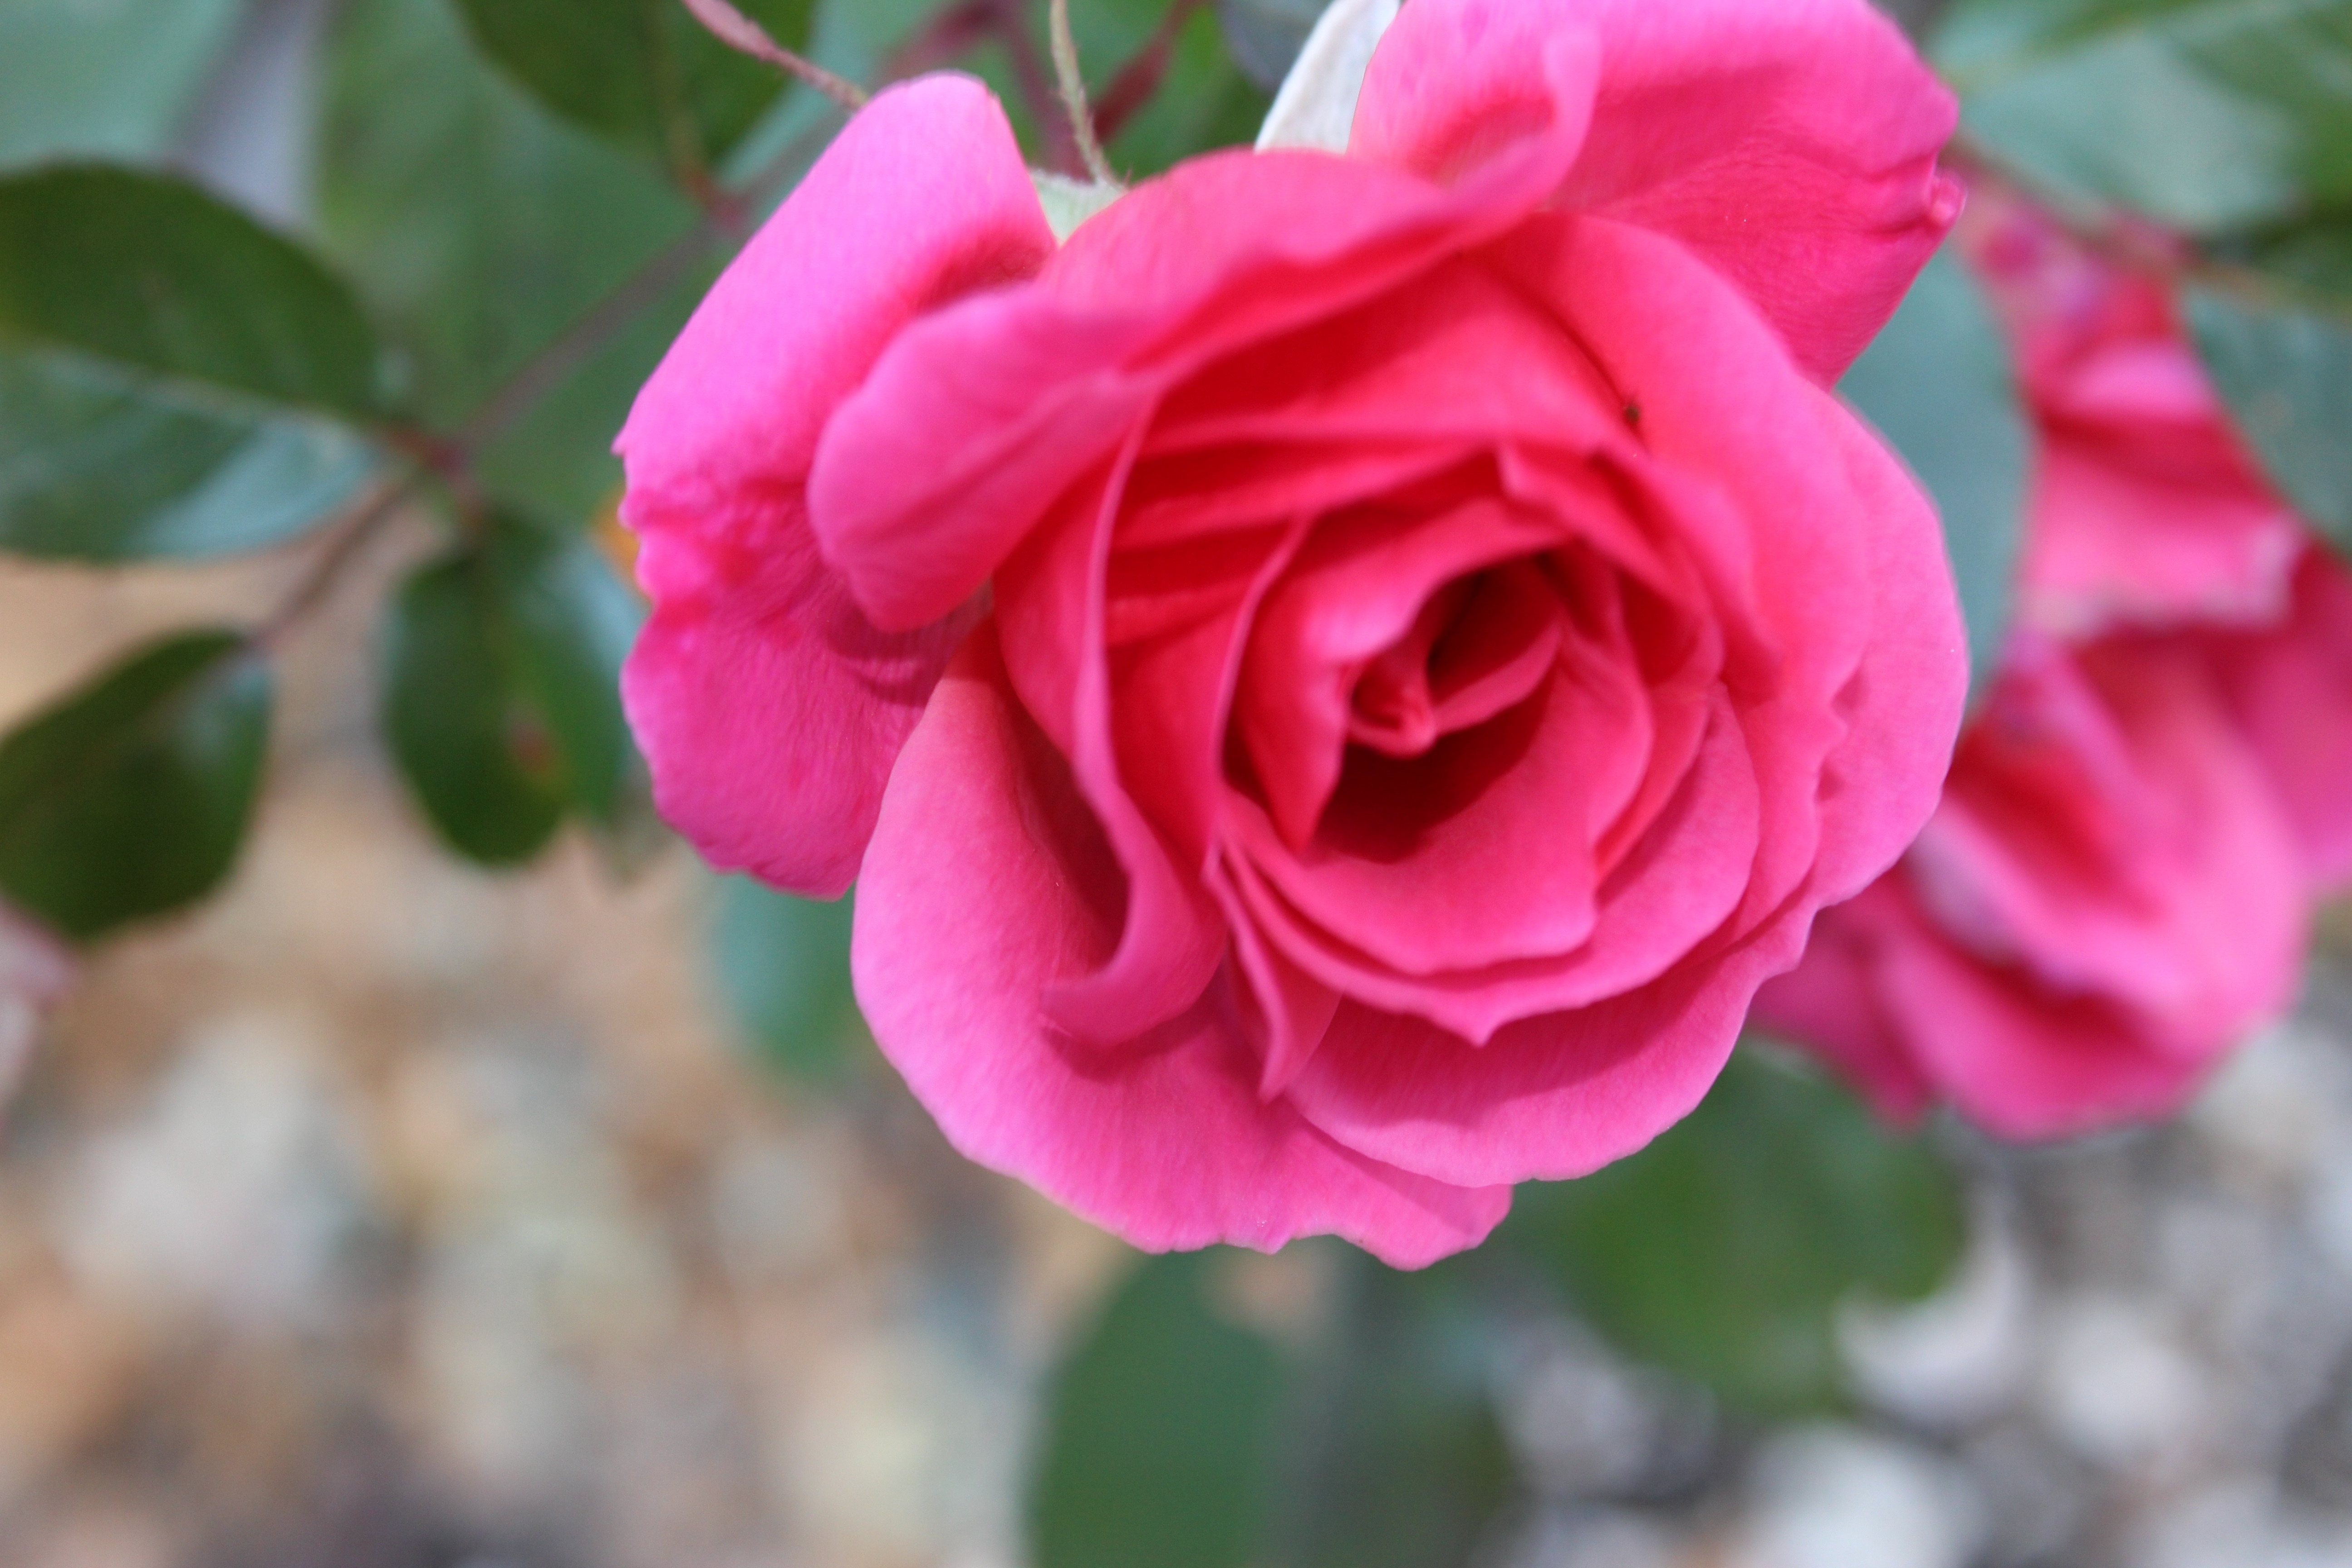 今日の誕生花の薔薇は、数十年ぶりの寒波も雪も経験してなお、美しく咲いているジェネラシオン・ジャルダンです。